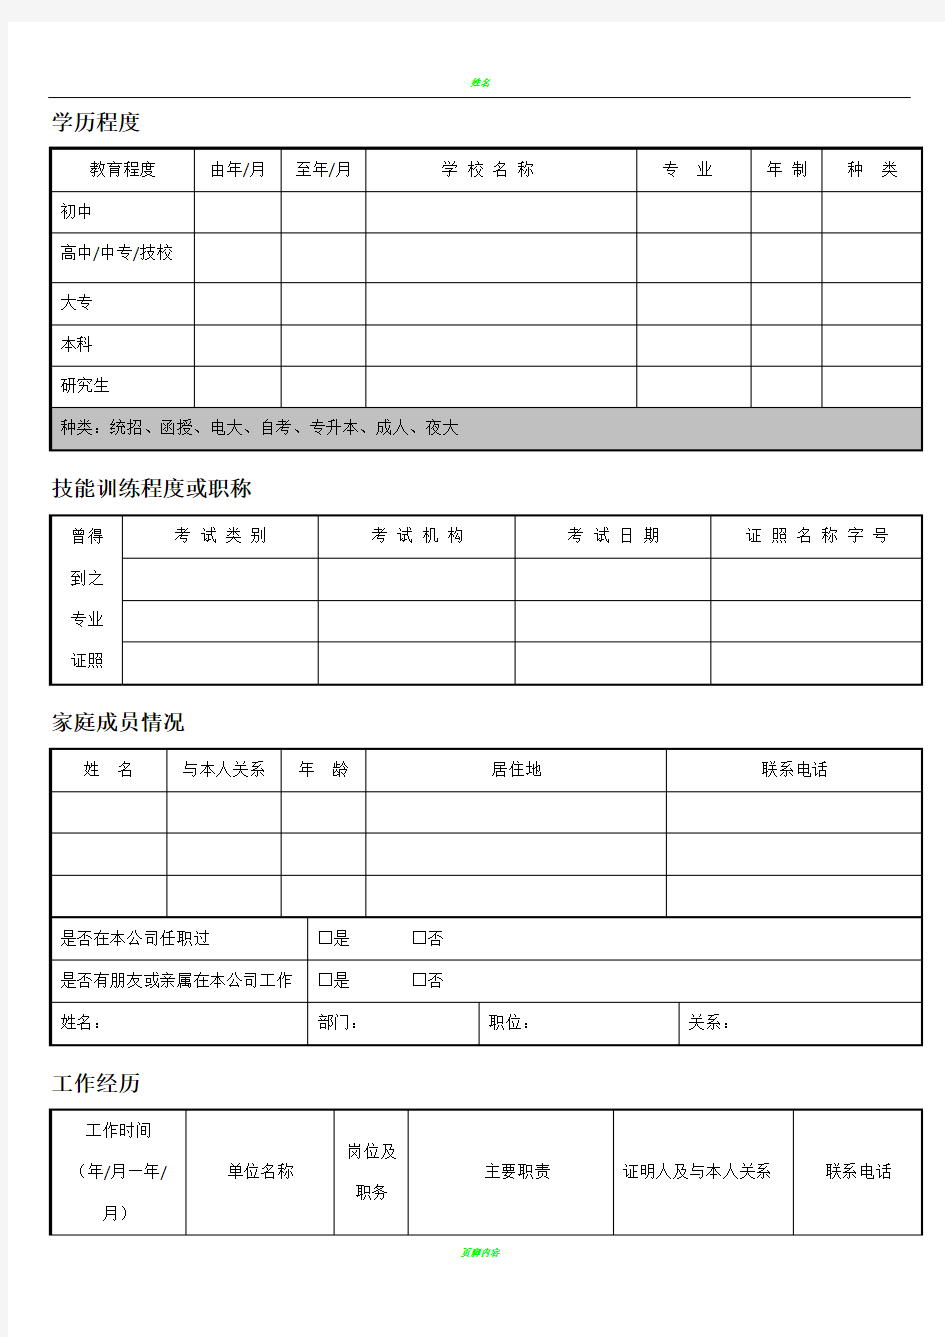 新入职员工履历表(填写模板)